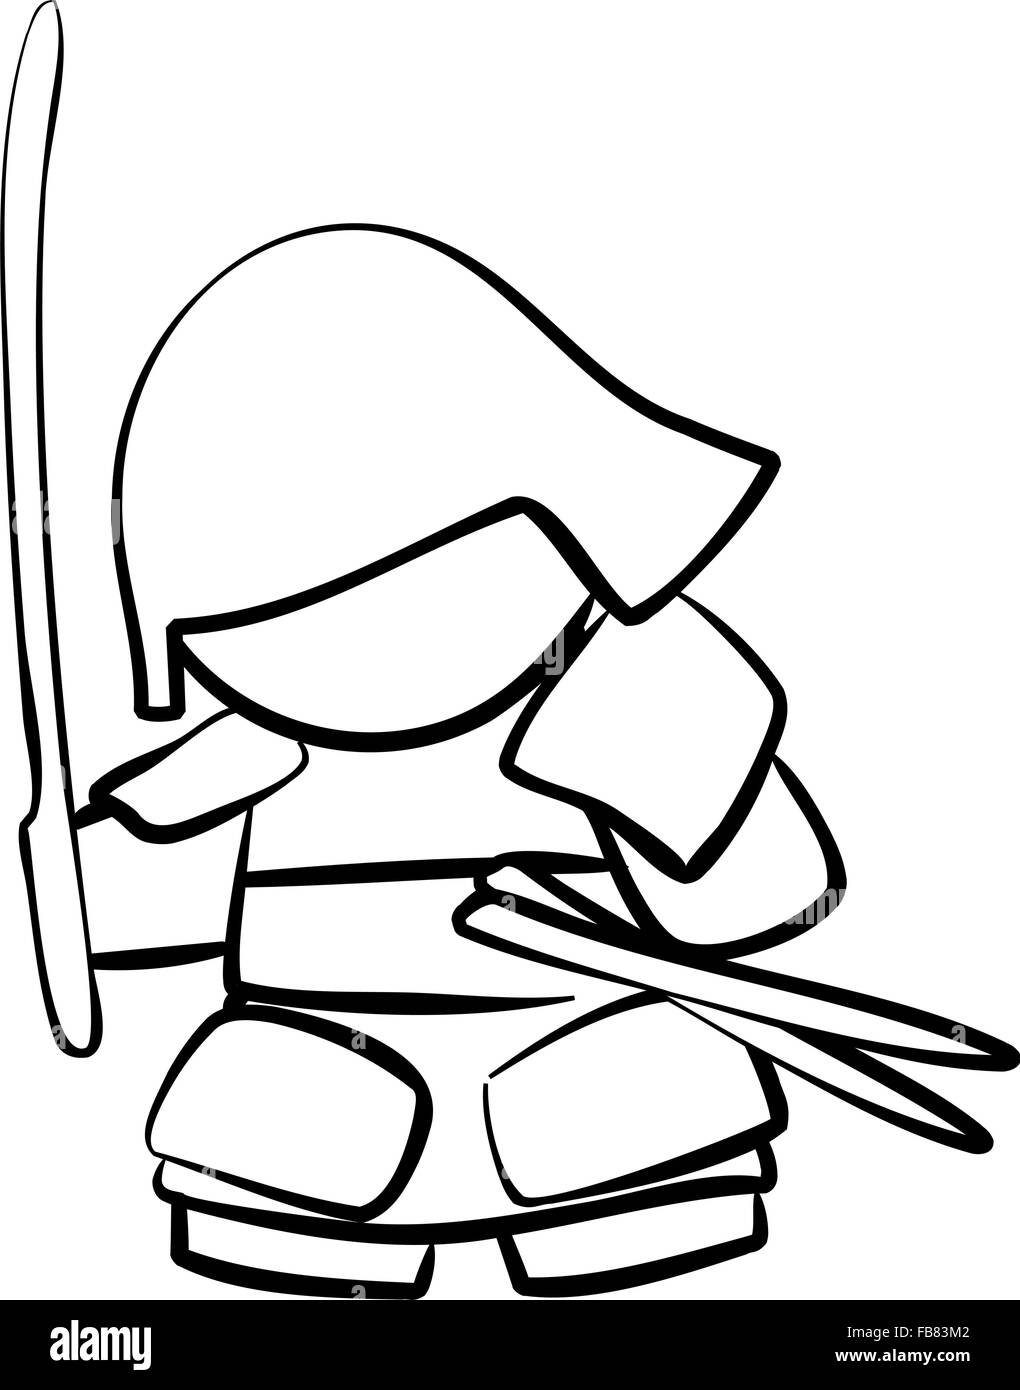 Zeichnung der Samurai mit Schwert Stock-Vektorgrafik - Alamy